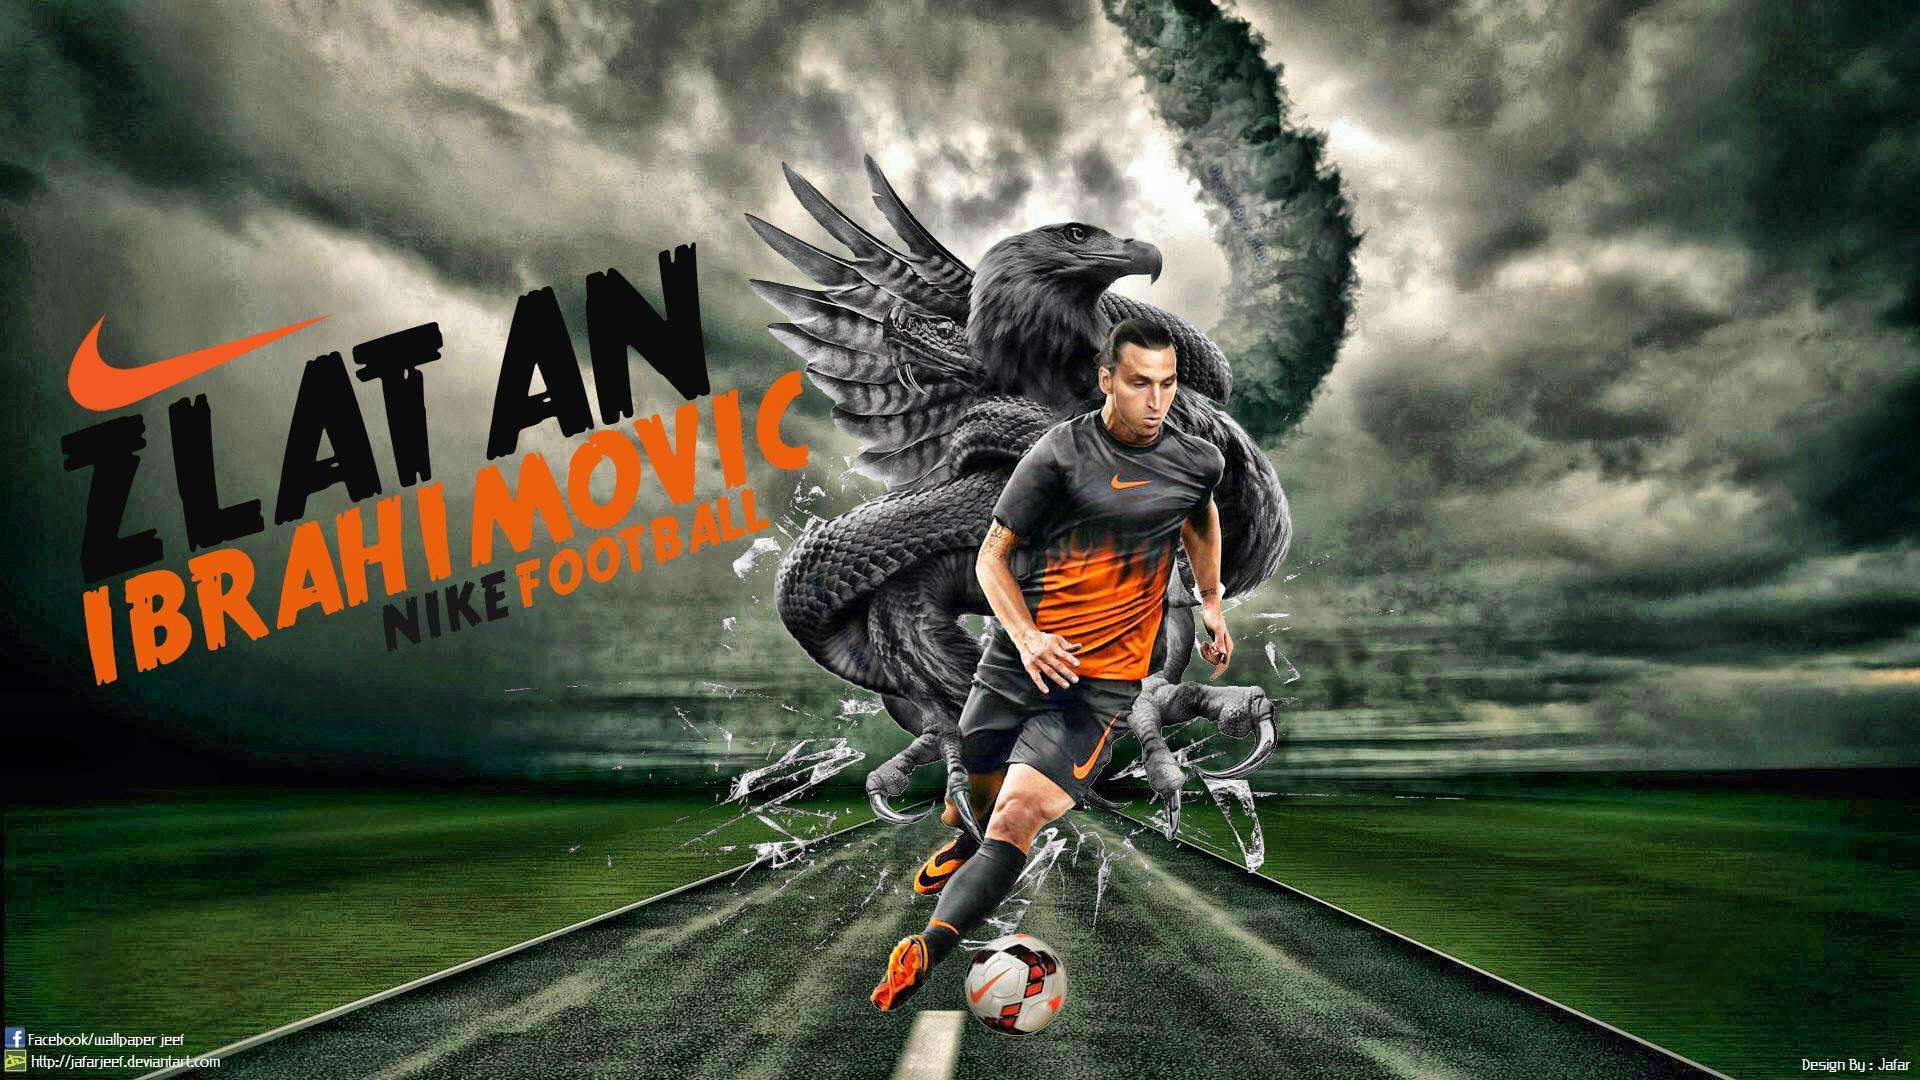 Zlatan-Ibrahimovic-2015-Nike-Wallpaper-download.jpg